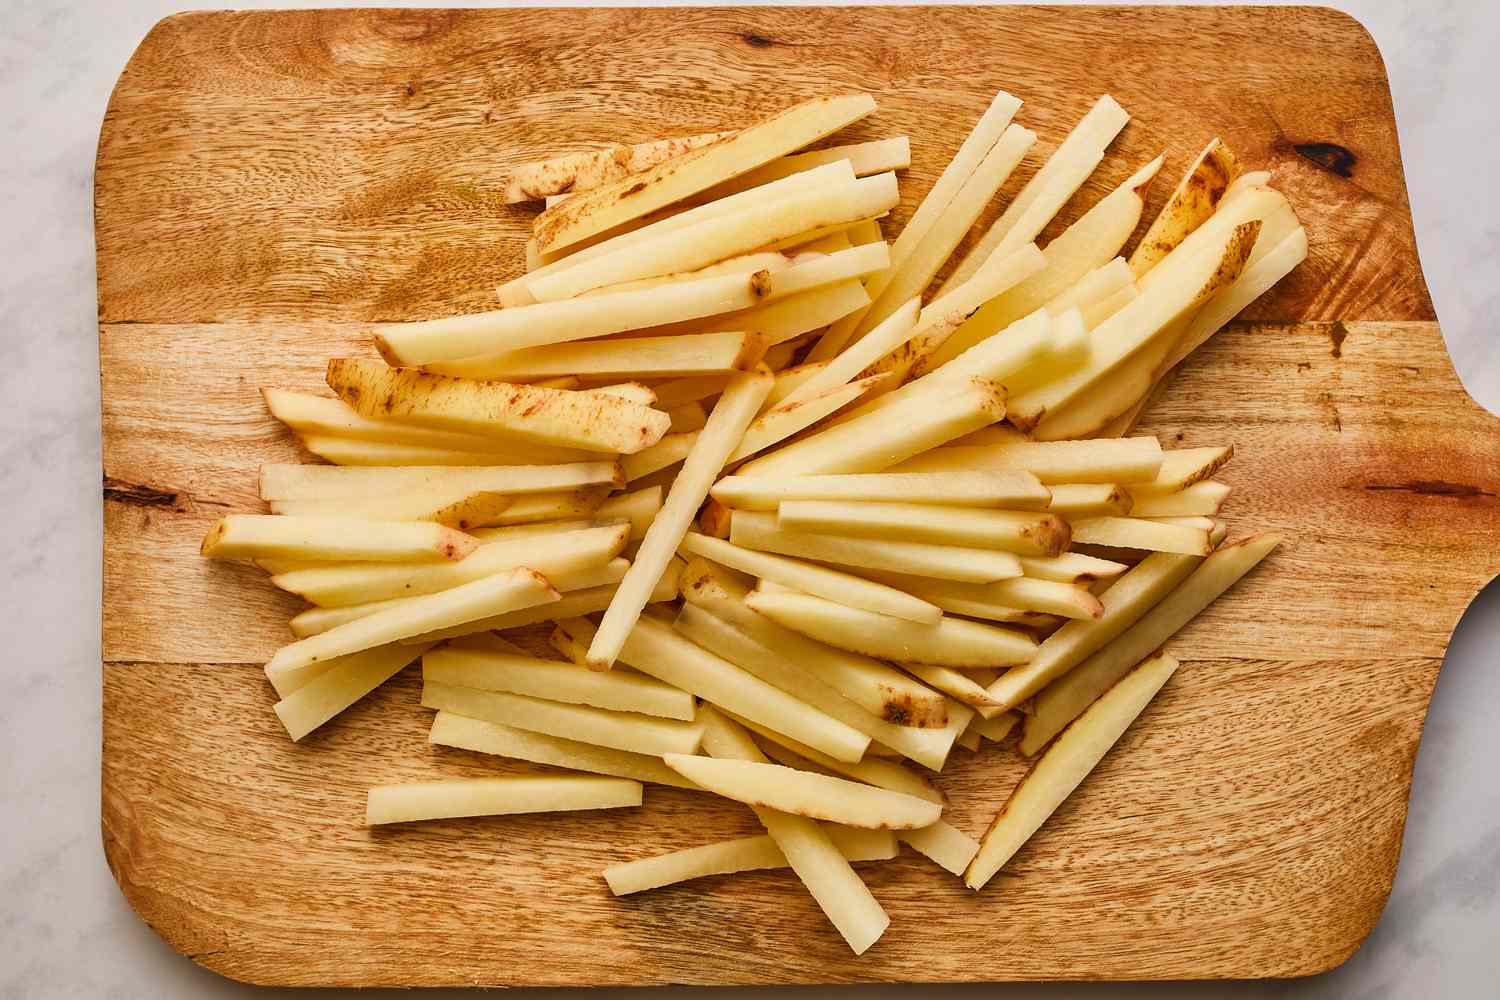 Potatoes cut for fries